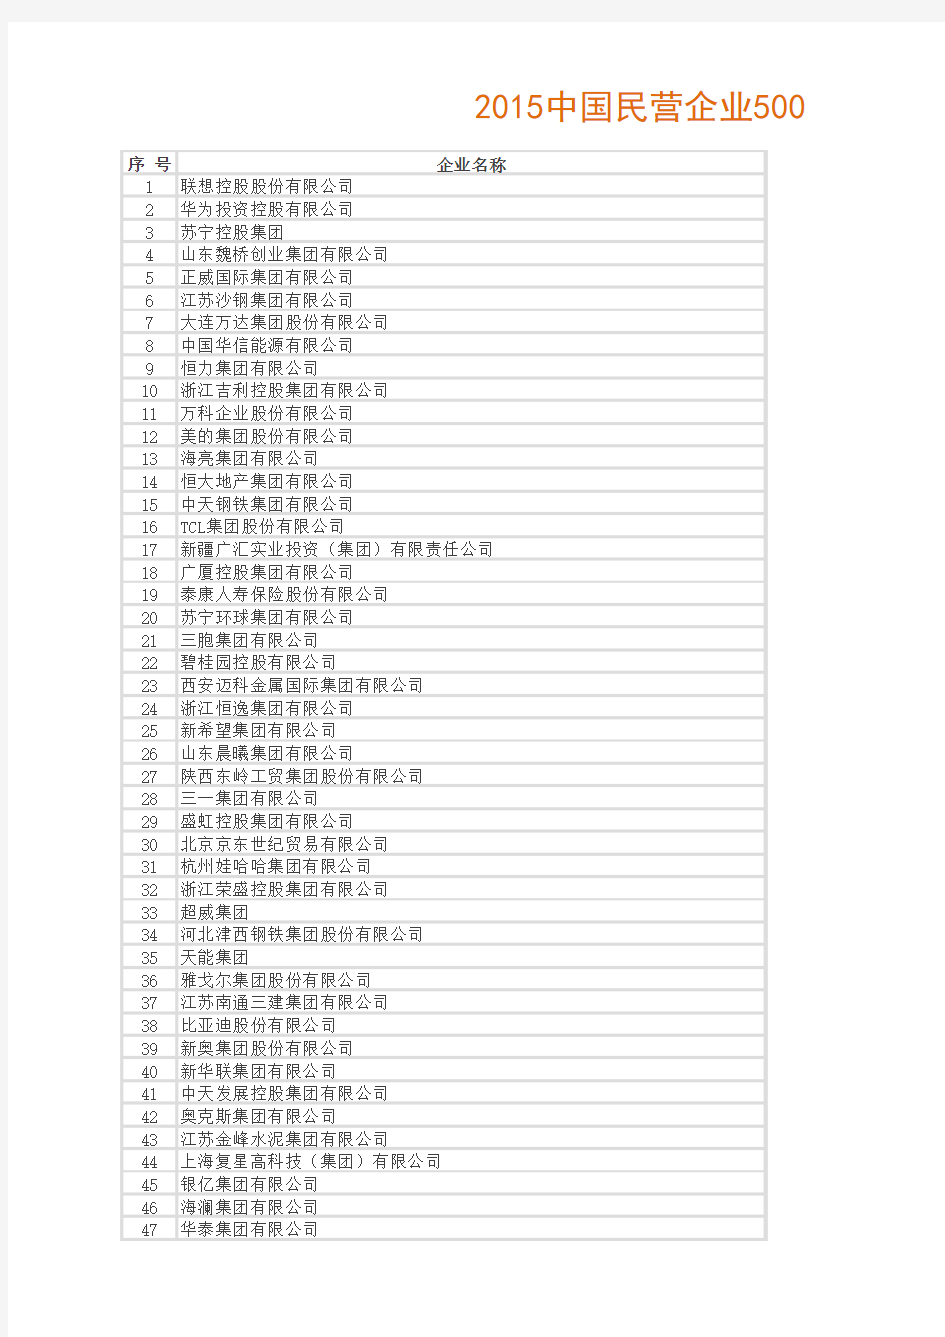 2015中国民营企业500强榜单